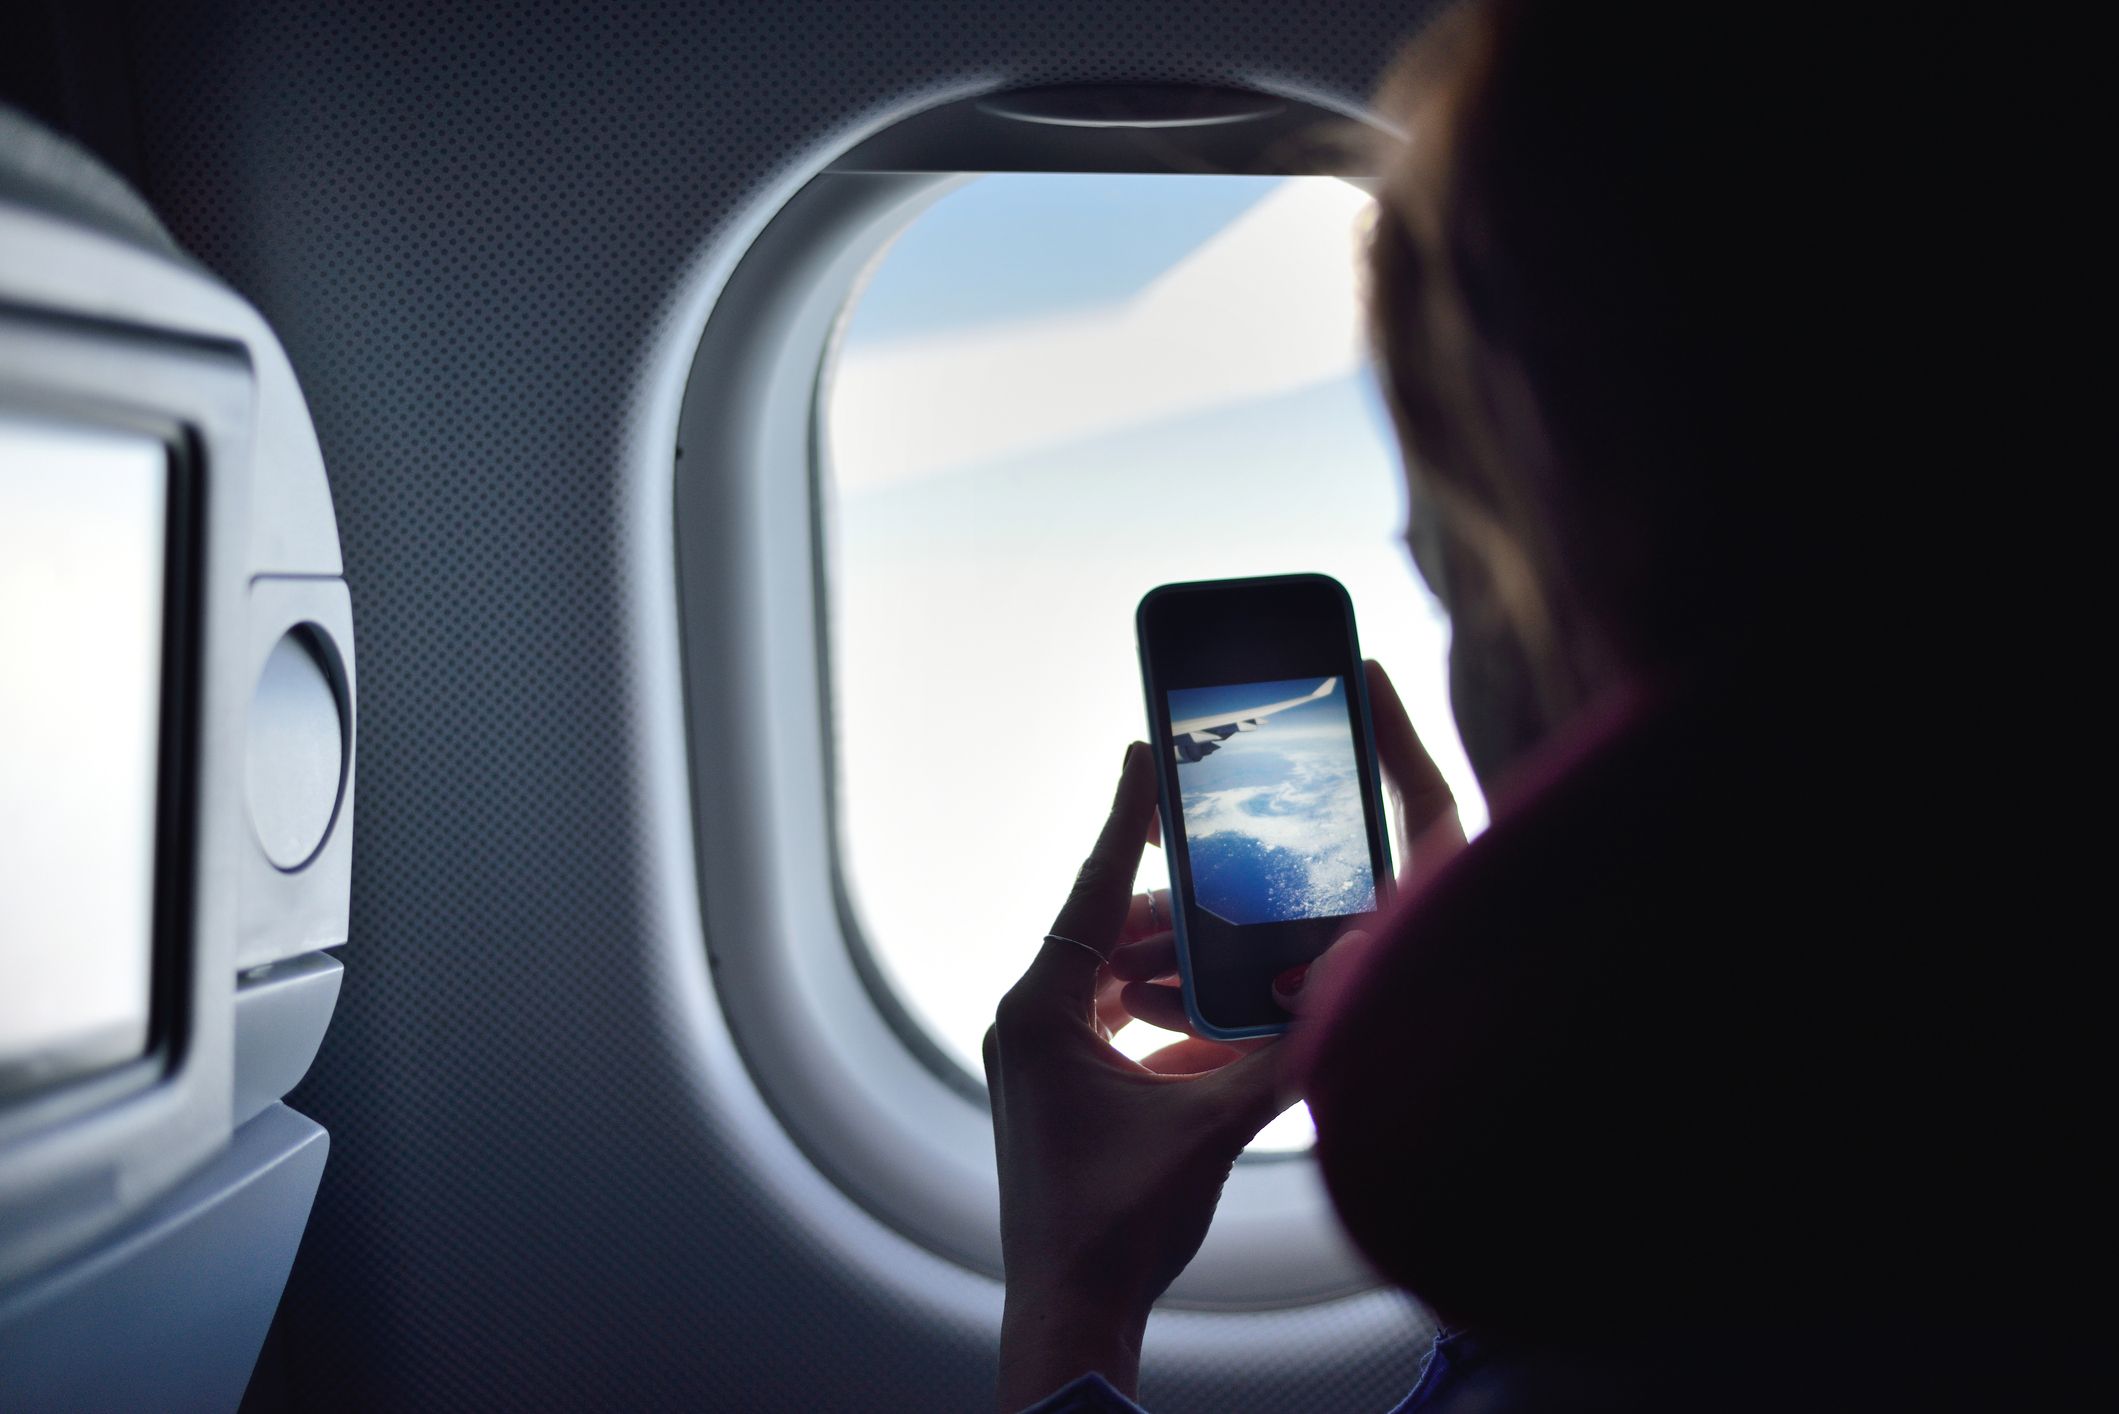 Mainstream Intact mist Waarom moet je telefoon op vliegtuigmodus tijdens een vlucht?